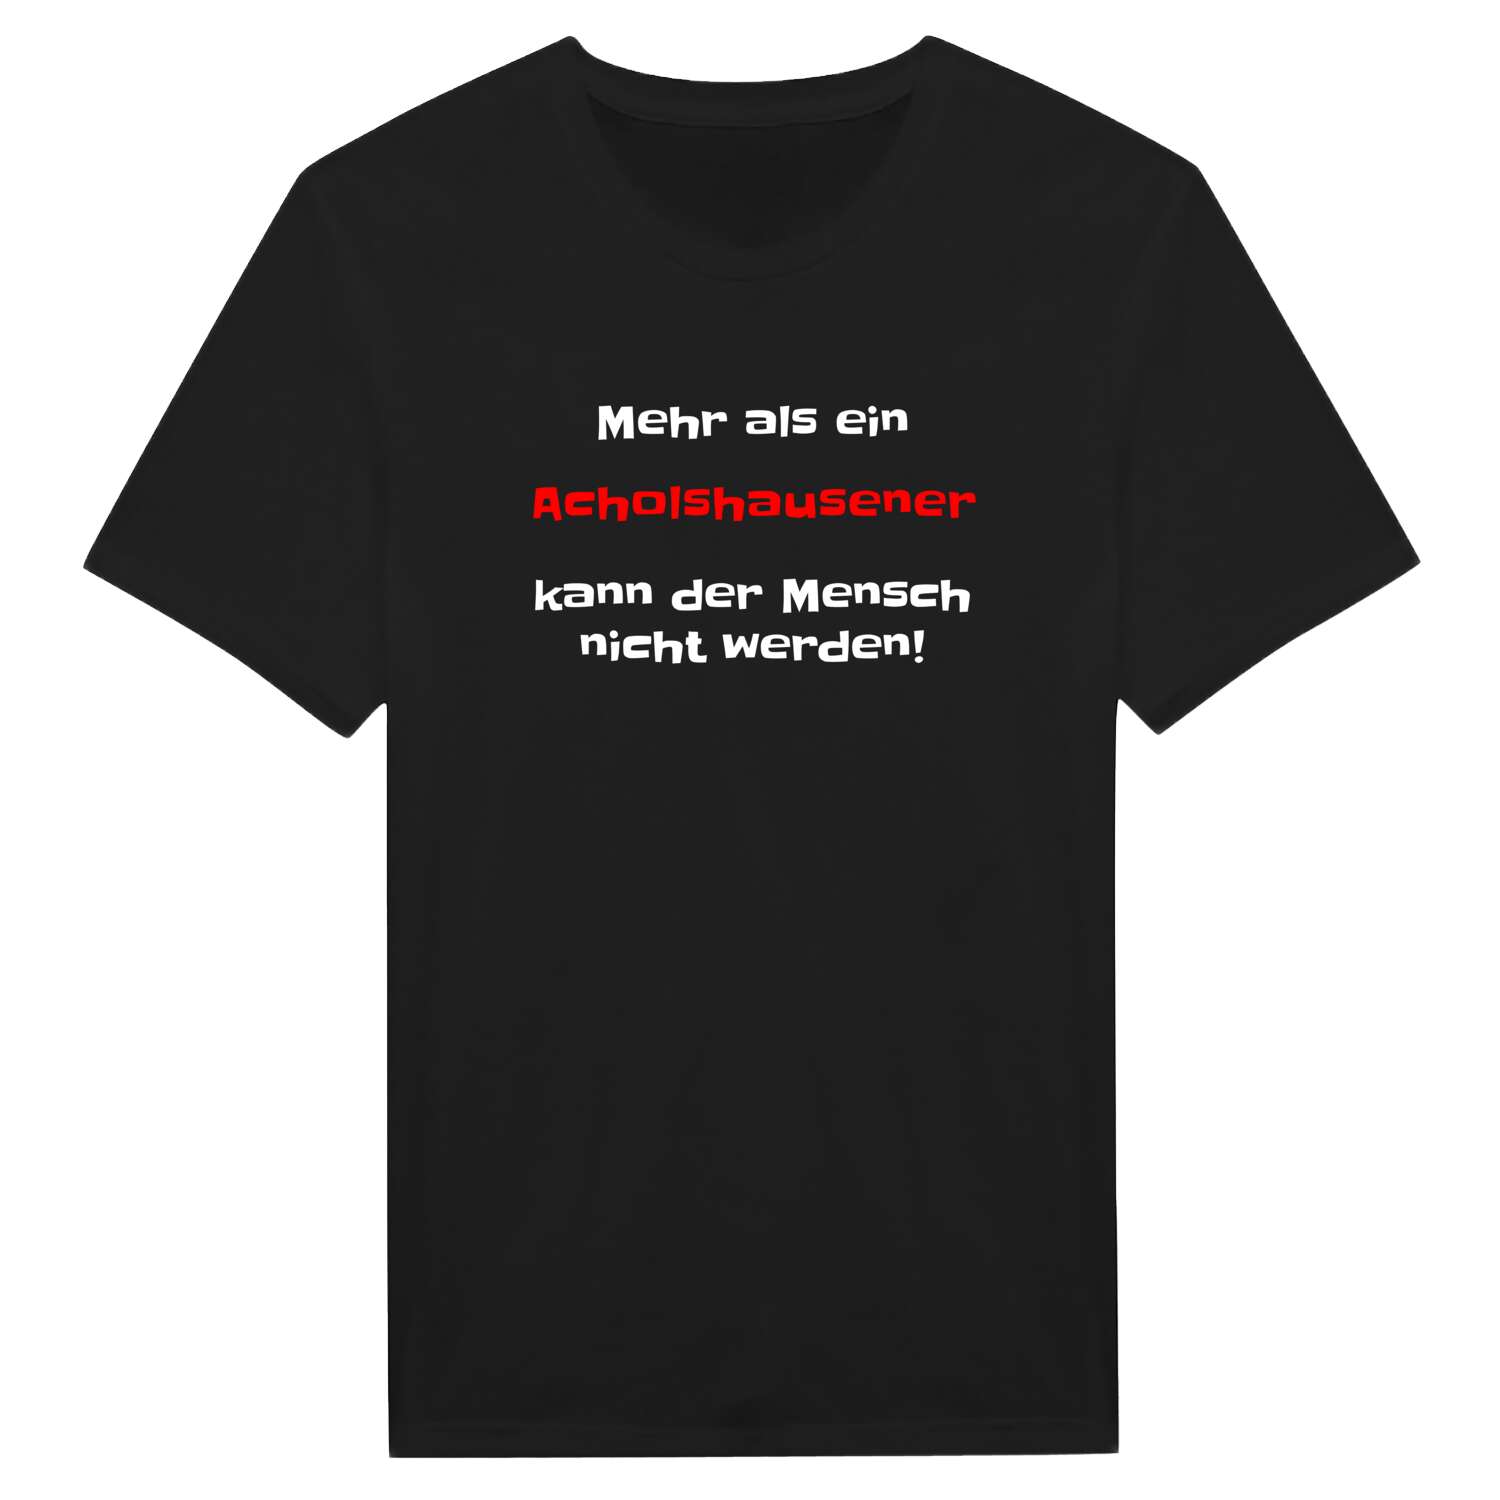 Acholshausen T-Shirt »Mehr als ein«